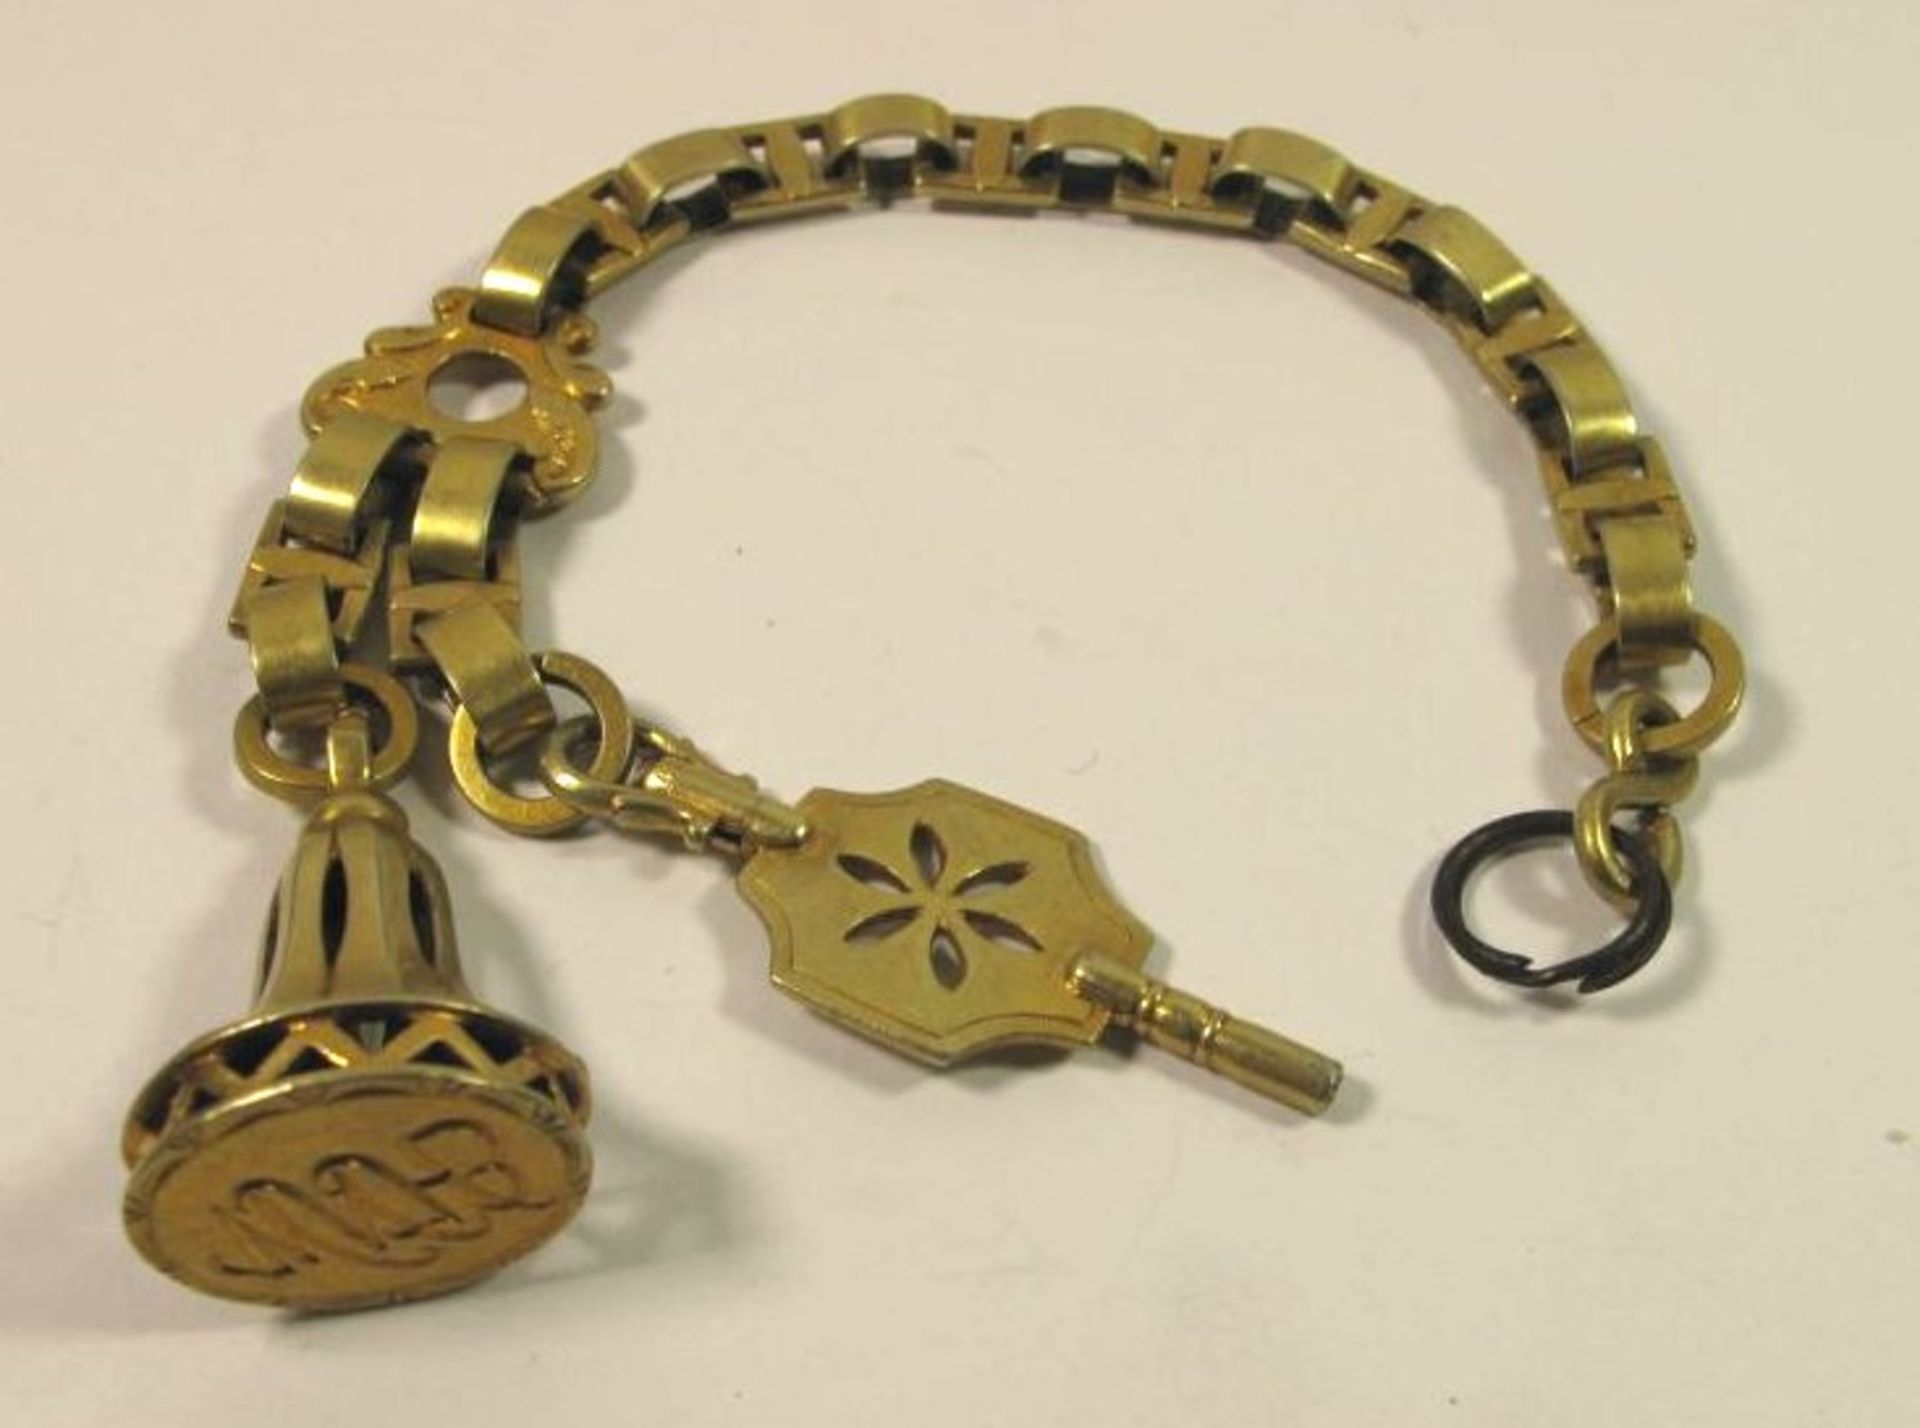 Petschaft und Uhrenschlüssel an Kette, 19. Jhd., vergoldet, L-22,5cm.